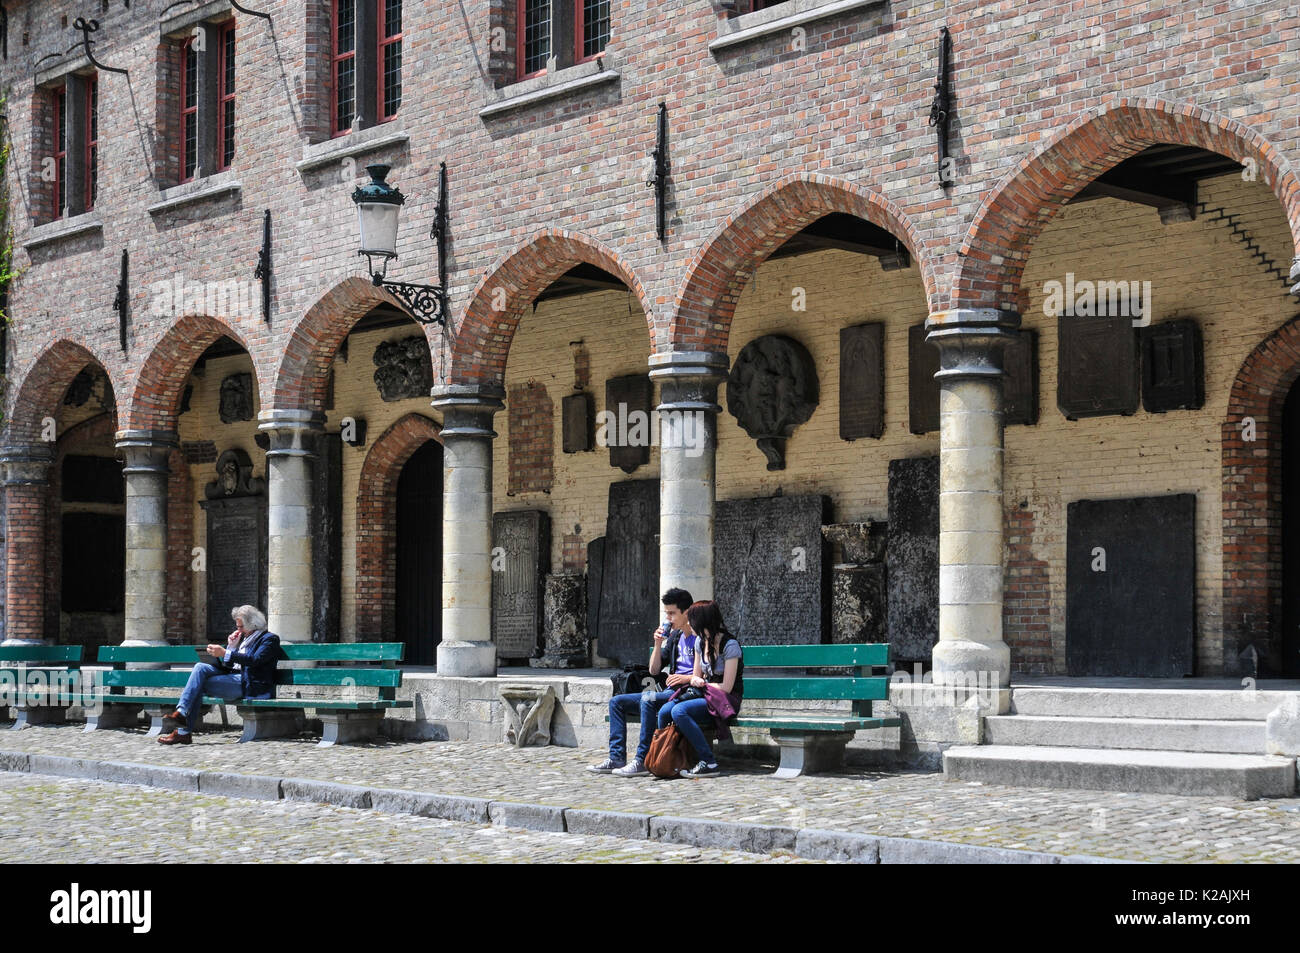 Tre persone godere seduti al sole sulle panchine al di fuori degli archi medievali del gruuthusemuseum nella città di Brugge / Bruges in Belgio Foto Stock